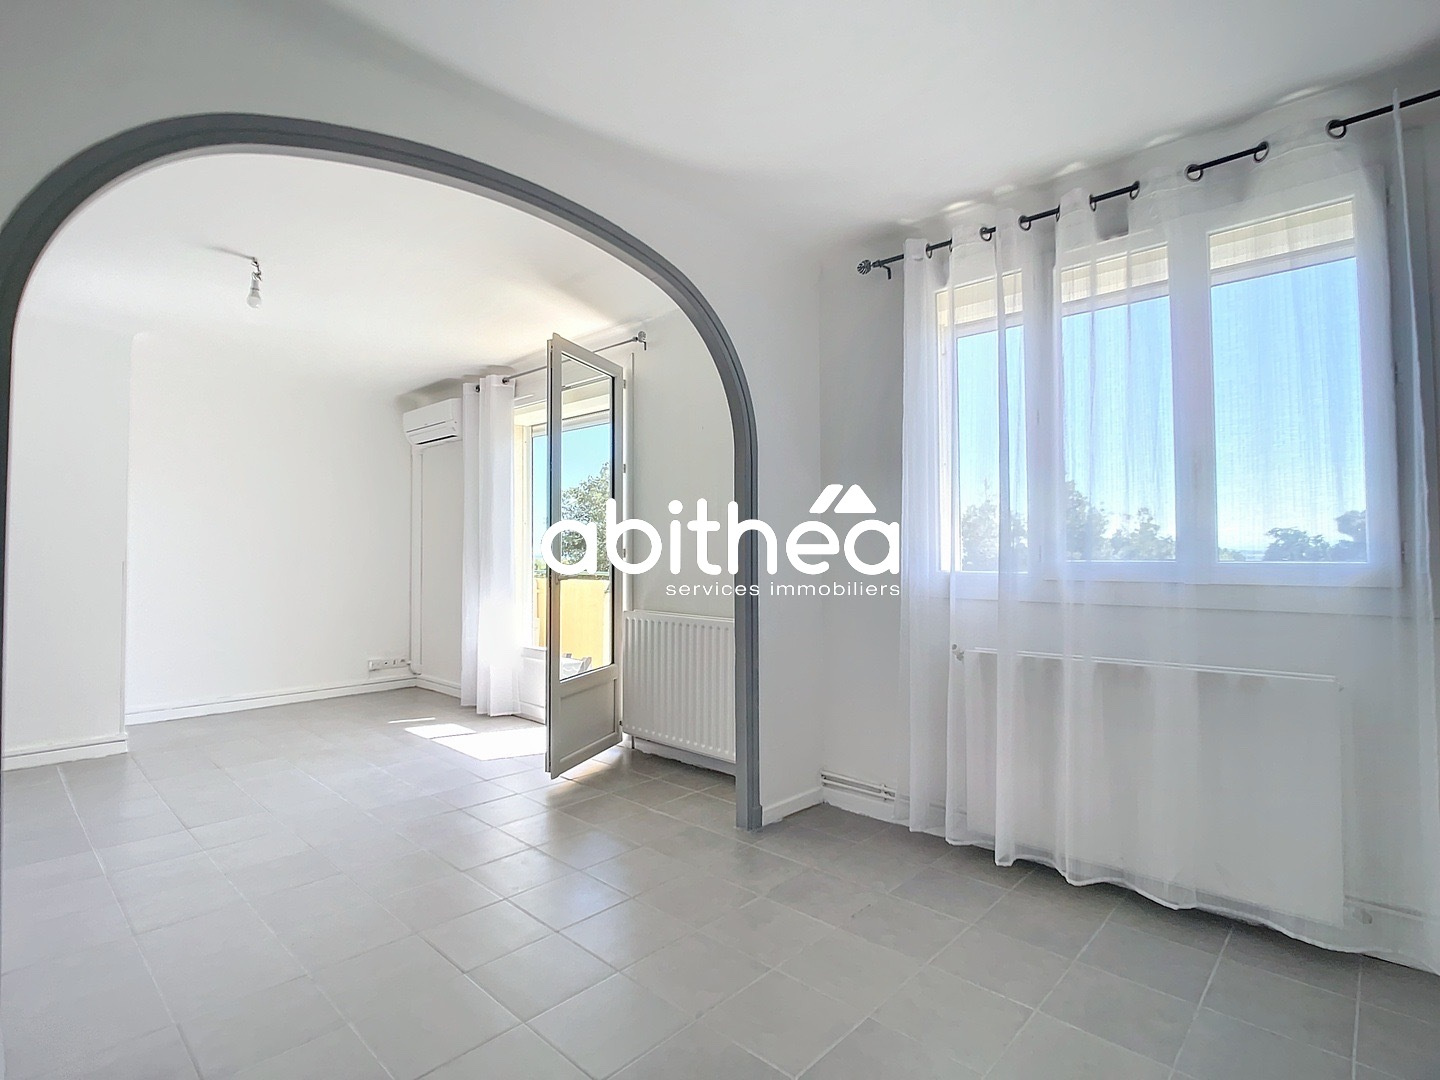 Vente Appartement 66m² 3 Pièces à Béziers (34500) - Abithea